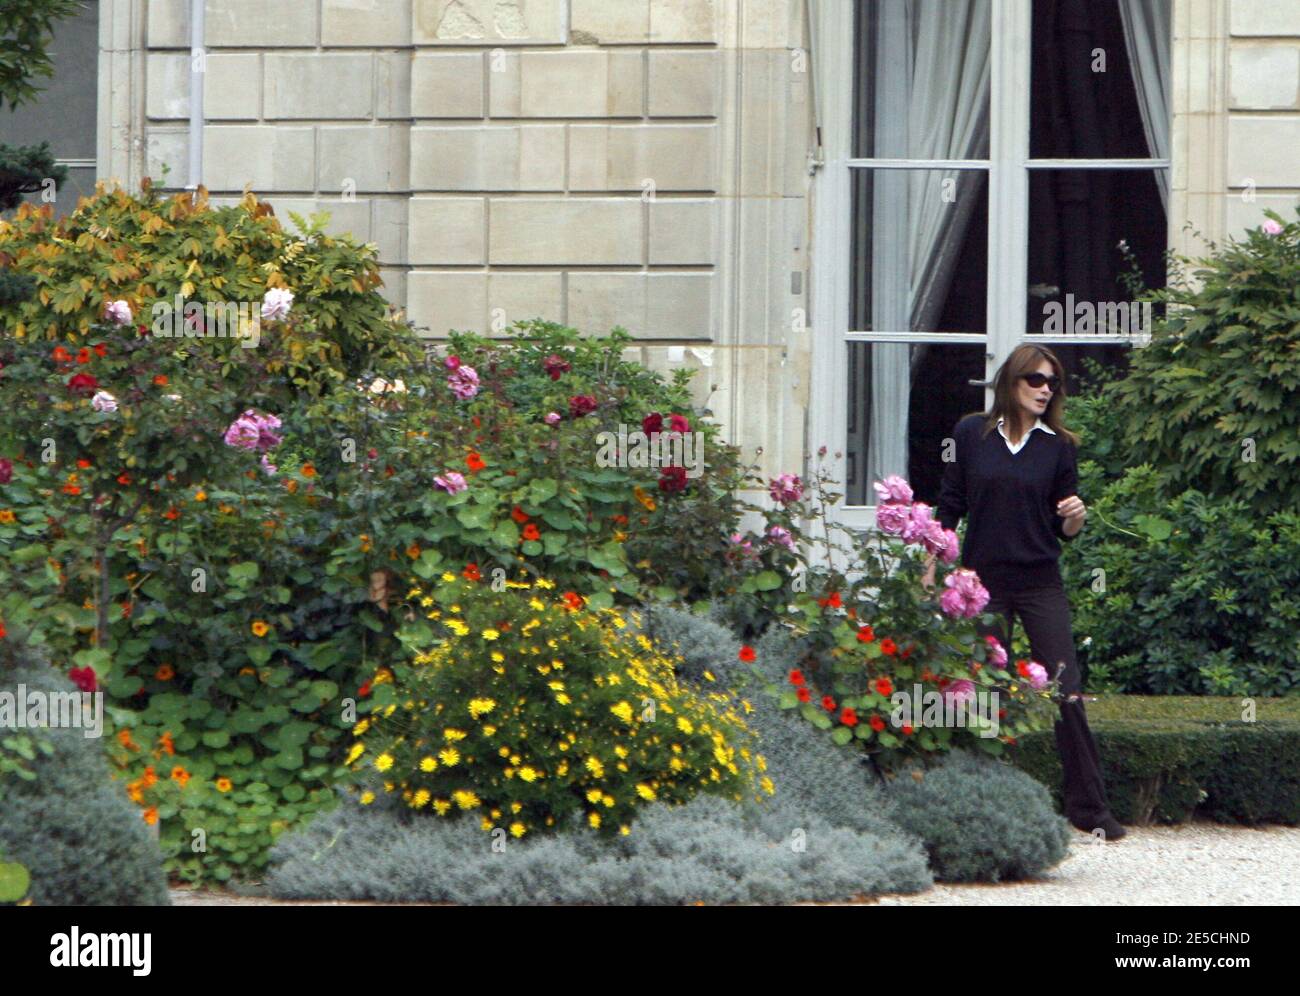 First Lady Carla Bruni-Sarkozy im Elysee-Garten, während sein Mann Nicolas Sarkozy die europäischen Staats- und Regierungschefs und Vertreter der Eurogruppe zu einem Notfalltreffen empfing, um sich auf spezifische, gesamteuropäische Maßnahmen zu einigen, um den zermürbten Finanzsektor zu stützen und die Marktpanik zu stoppen. Paris, Frankreich, 12. Oktober 2008. Foto von Bernard Bisson/ABACAPRESS.COM Stockfoto